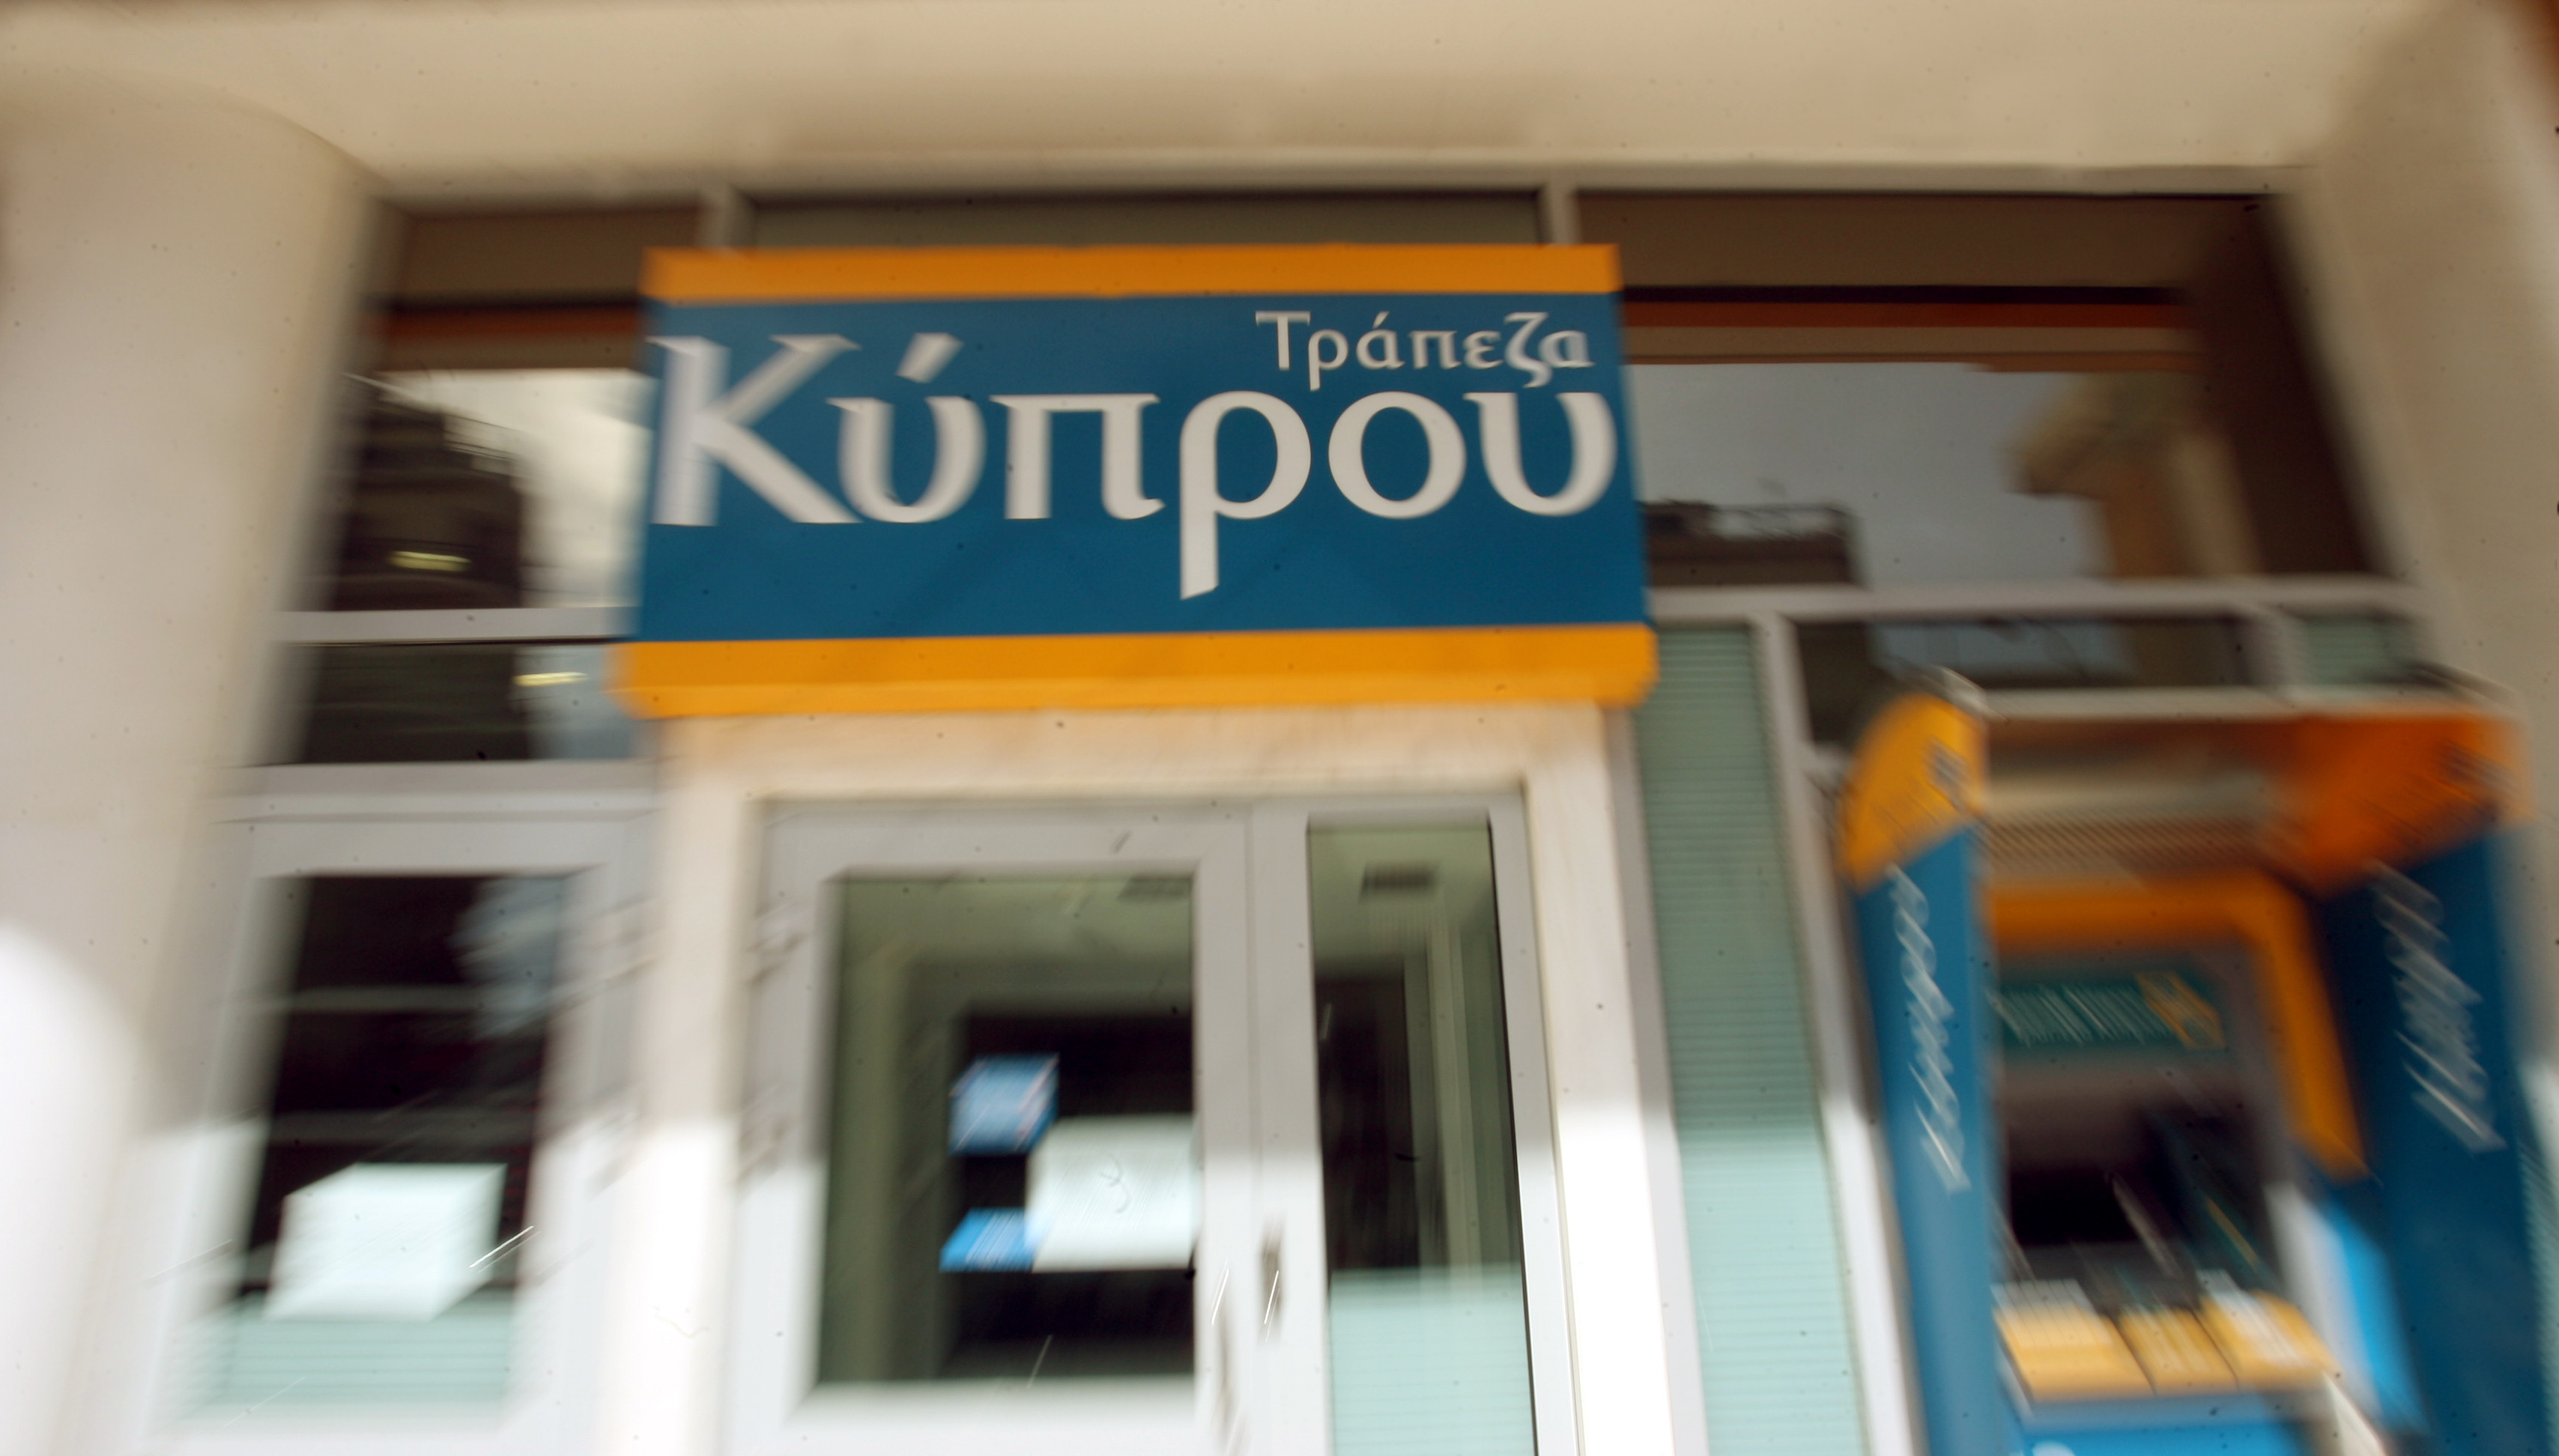 Επιτυχής η Αύξηση Μετοχικού Κεφαλαίου της Τράπεζας Κύπρου